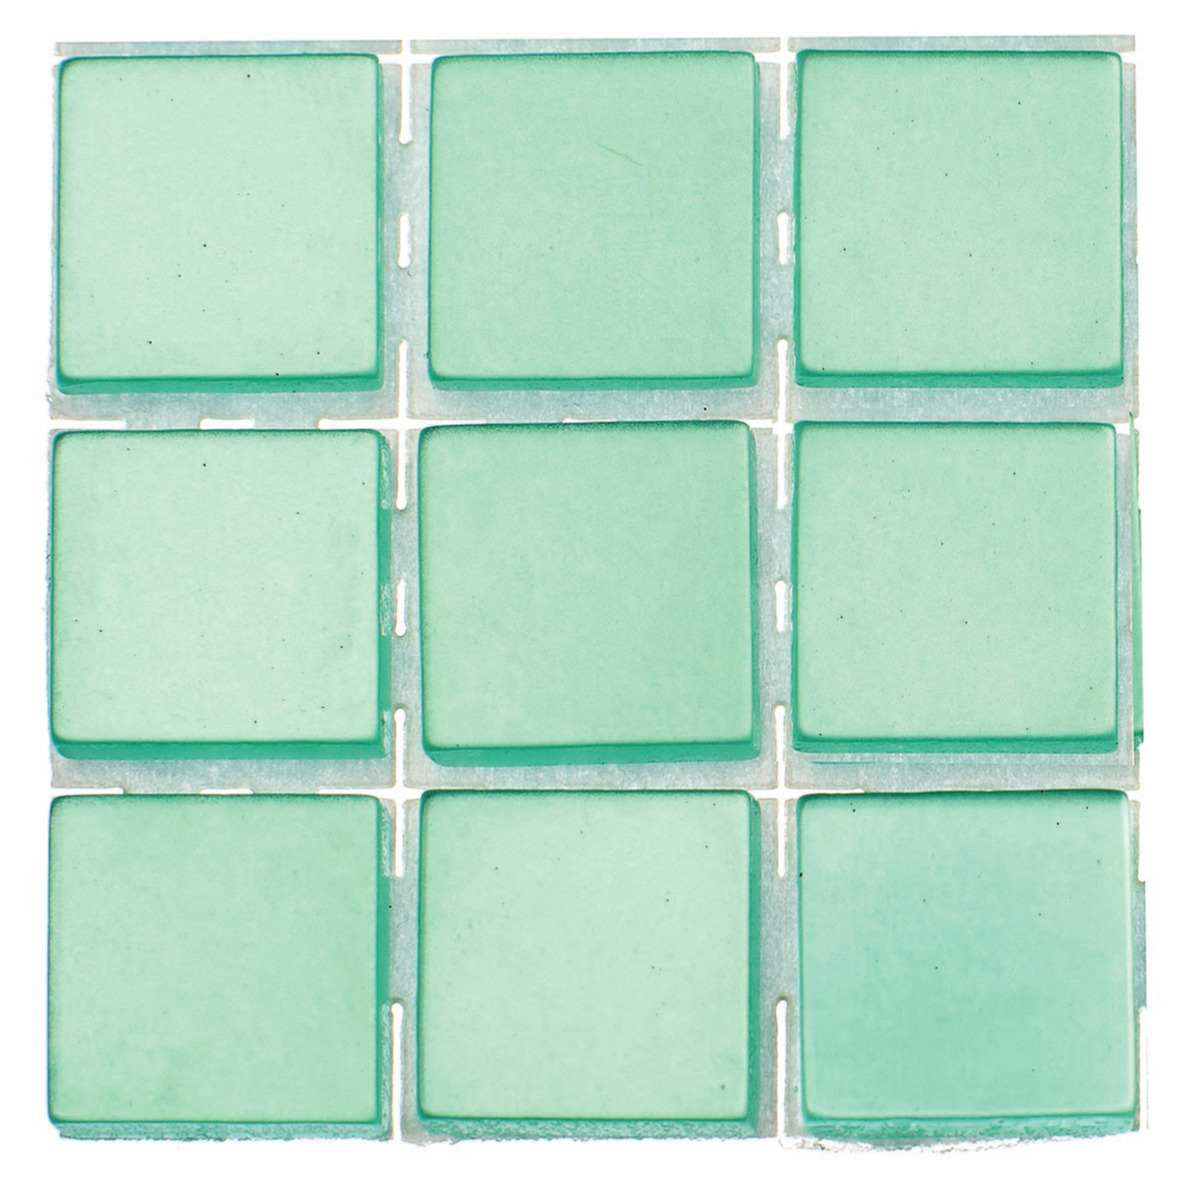 504x stuks mozaieken maken steentjes-tegels kleur turquoise 10 x 10 x 2 mm